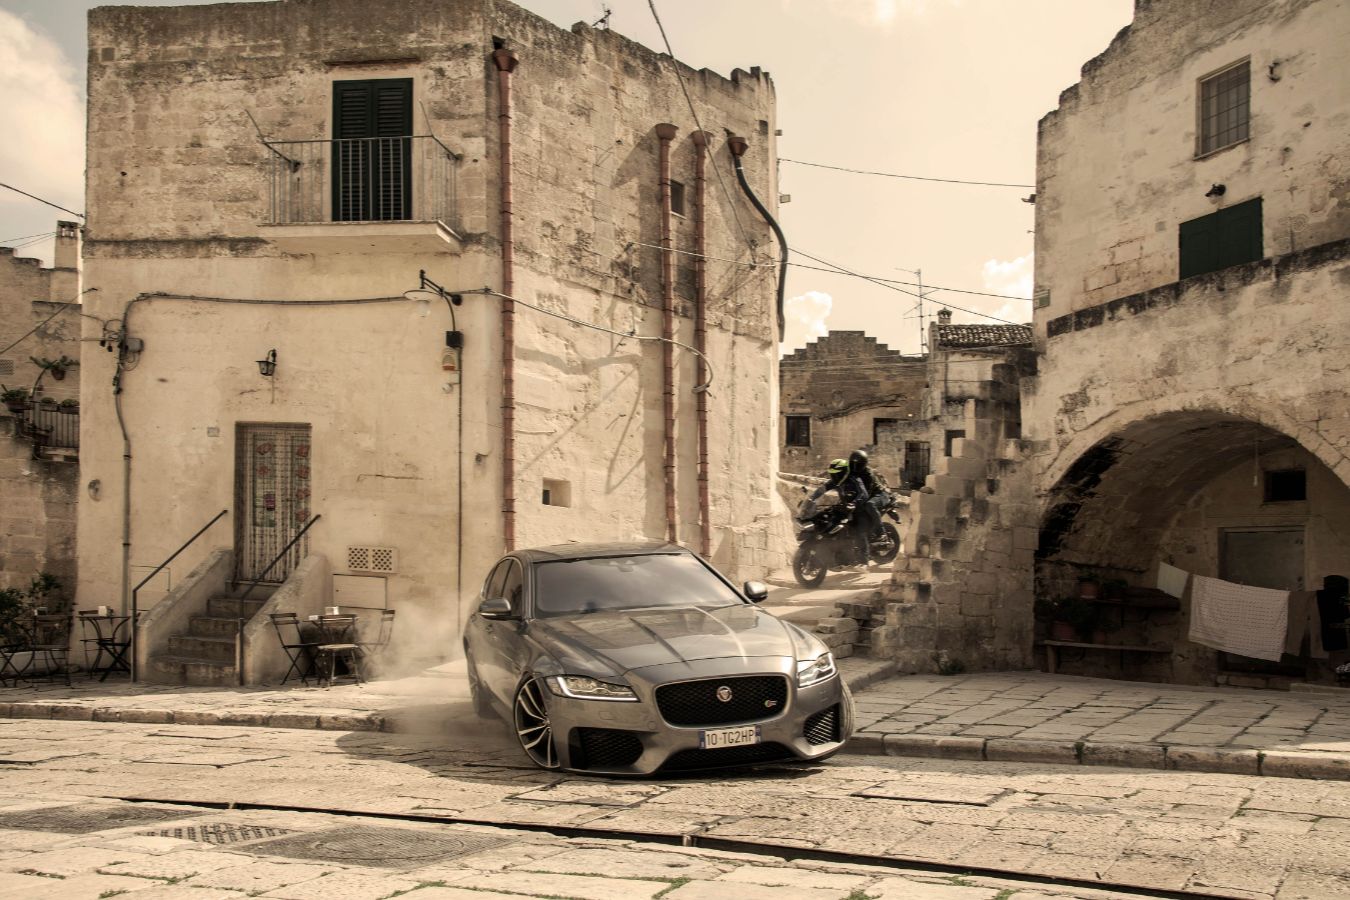 xe hoi 2 Jaguar XF lần đầu kết hợp ngoạn mục với Điệp viên 007 Trong Bộ Phim No Time To Die